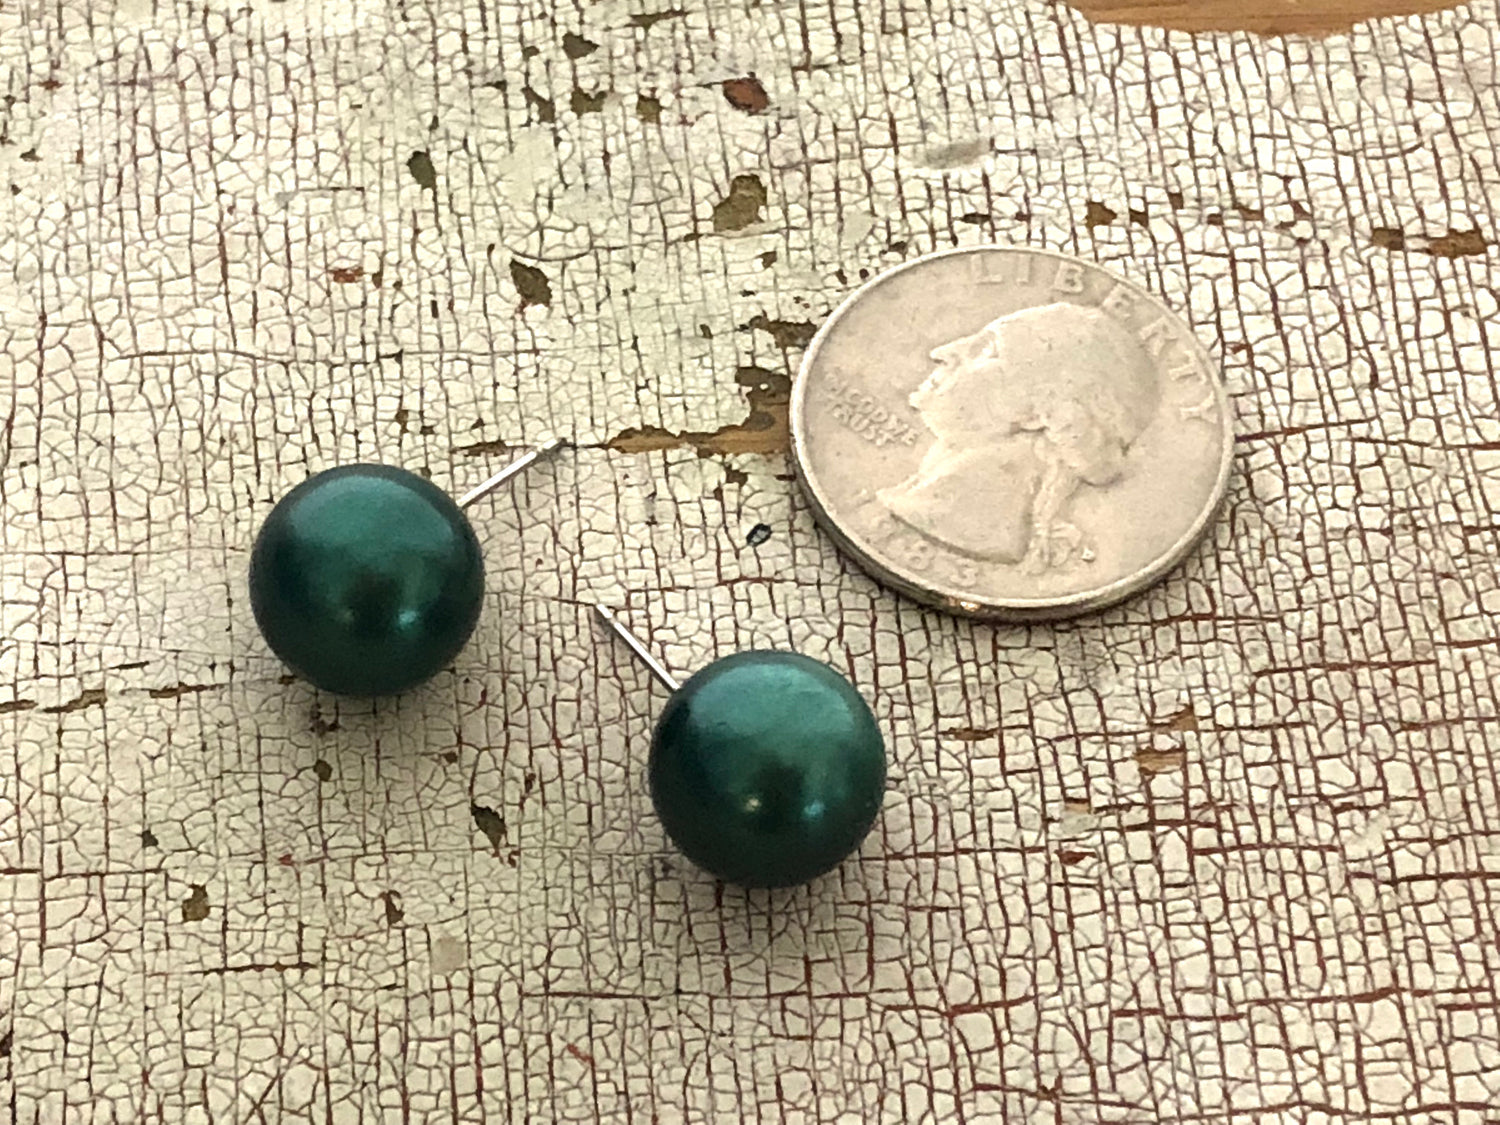 metallic green earrings